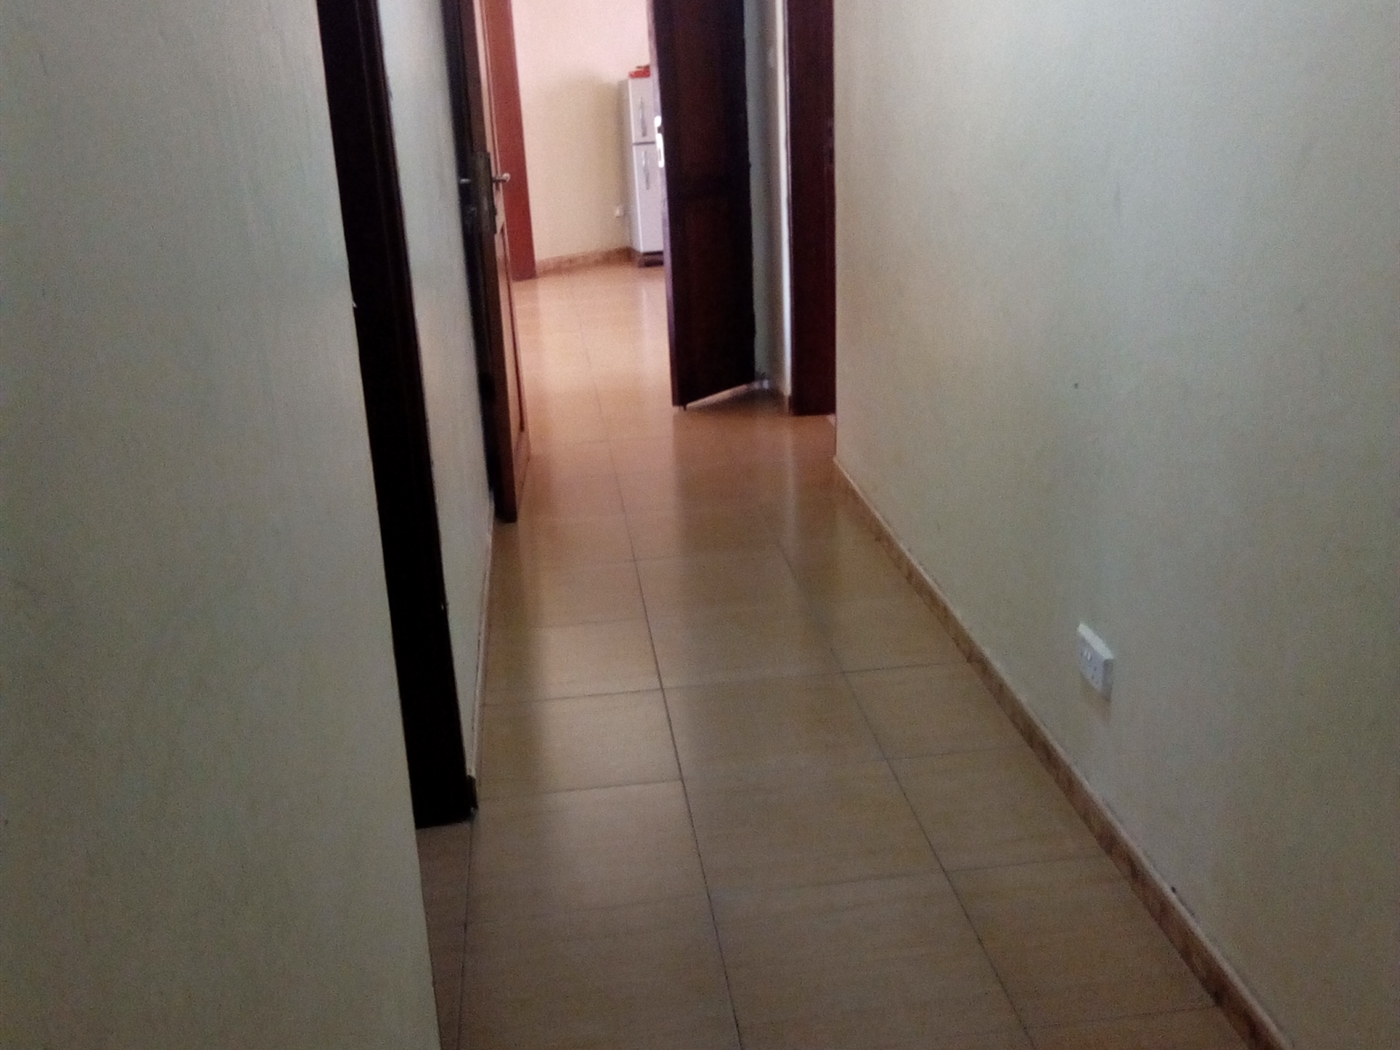 Corridor (Hallway)